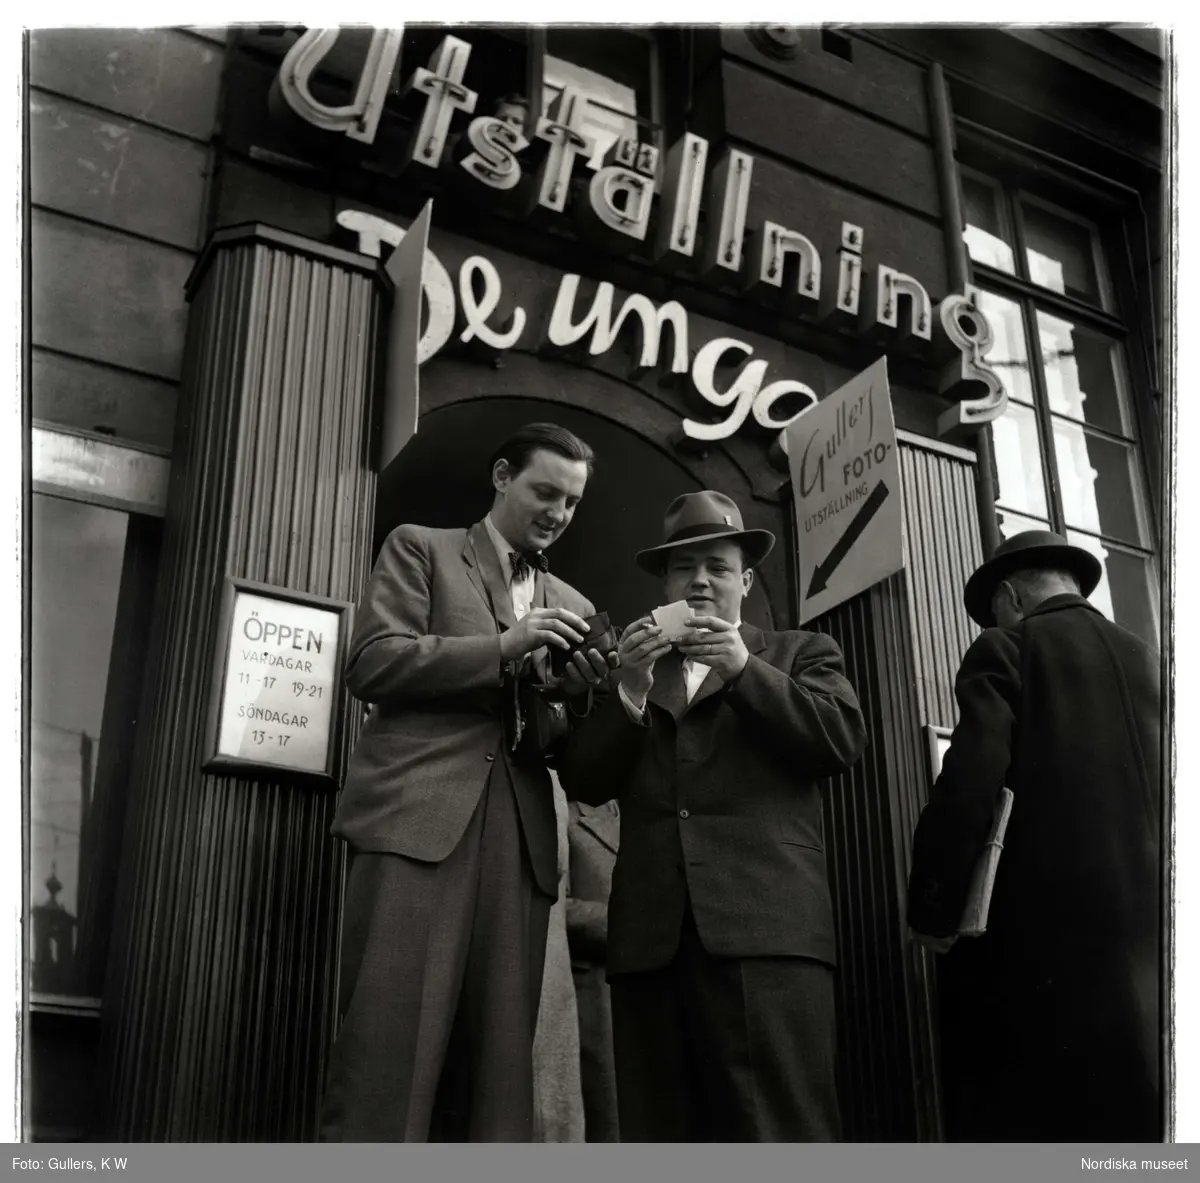 Fotoutställning på konstsalongen De Unga, 1948. Fotografen KW Gullers och författaren StiegTrenter vid entrén.